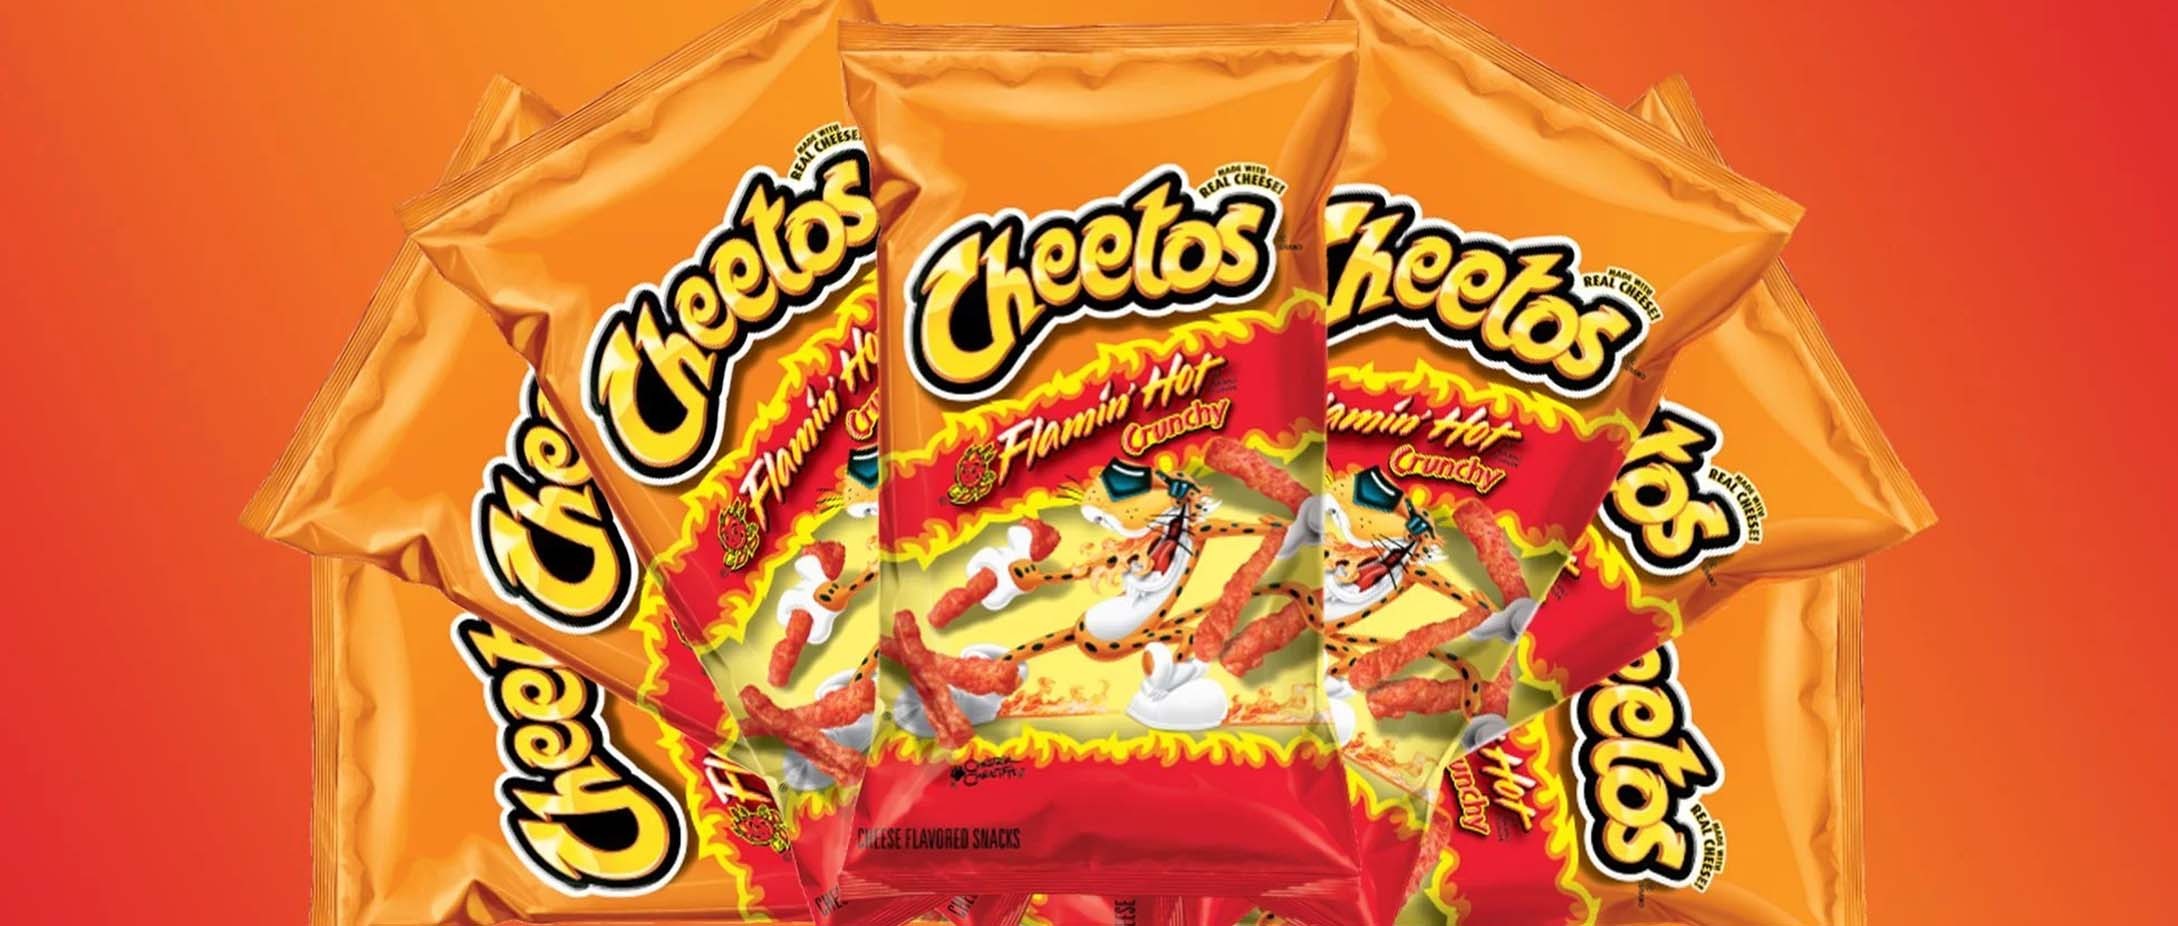 Cheetos : comment cette marque a-t-elle pris autant d'ampleur ?